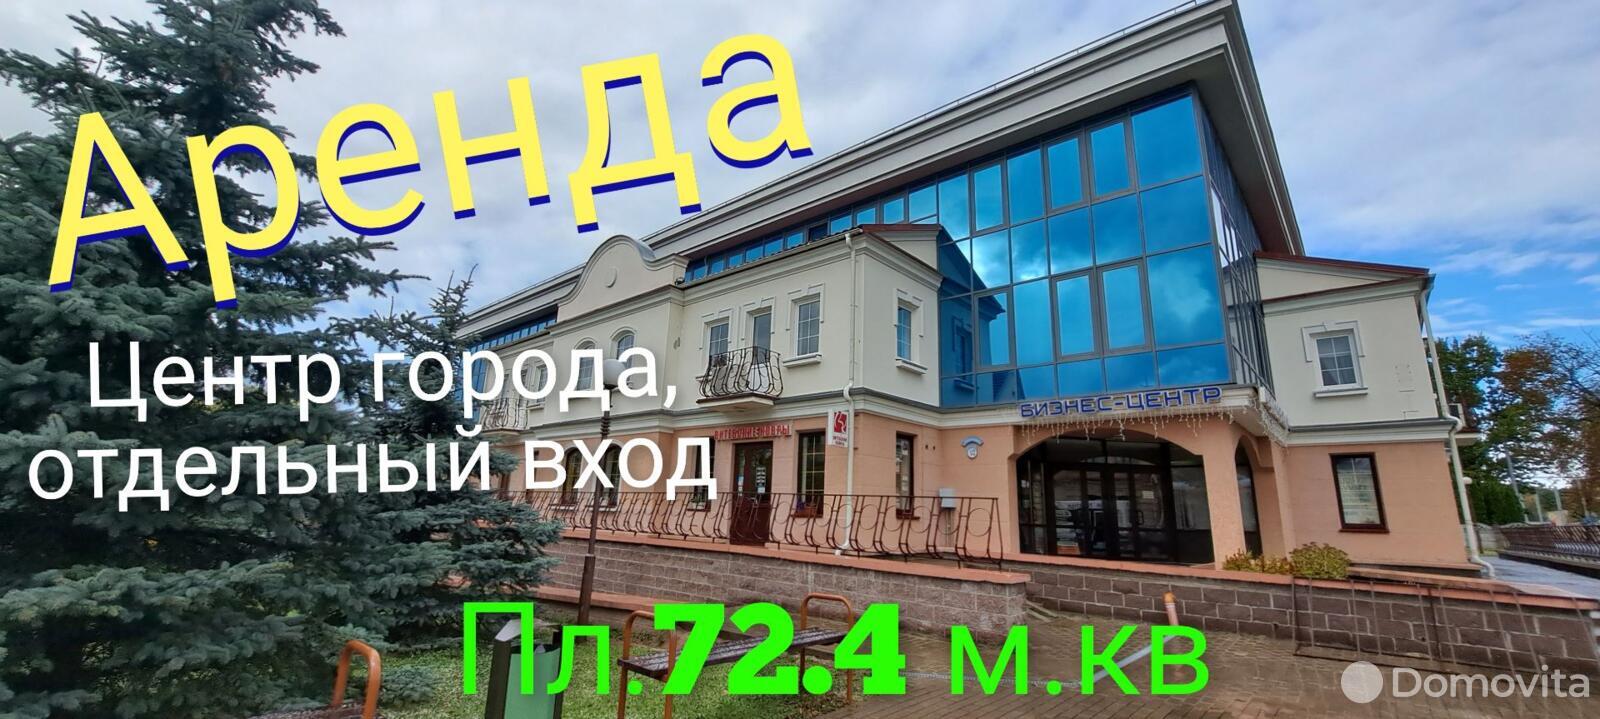 Аренда офиса на ул. Дзержинского, д. 40 в Гродно, 5068USD, код 11139 - фото 1